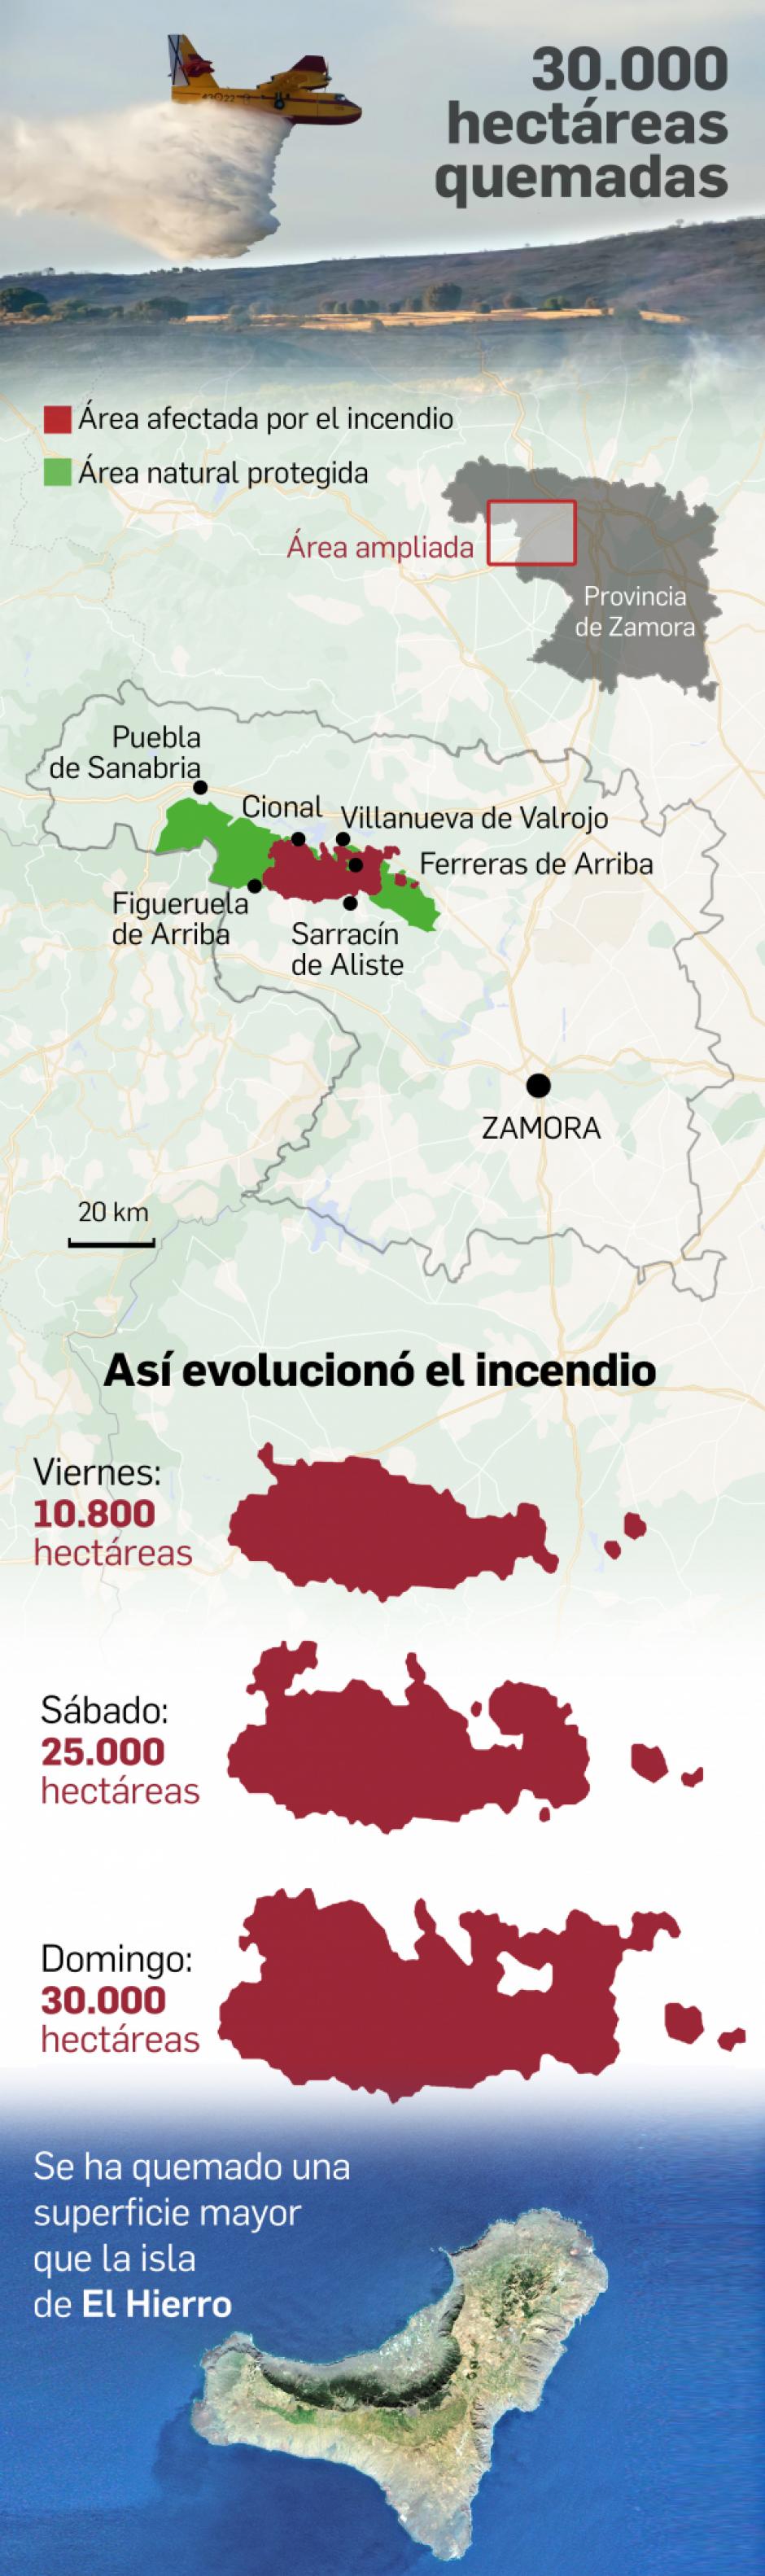 Infografía: Incendio de la Sierra de la Culebra (Zamora)